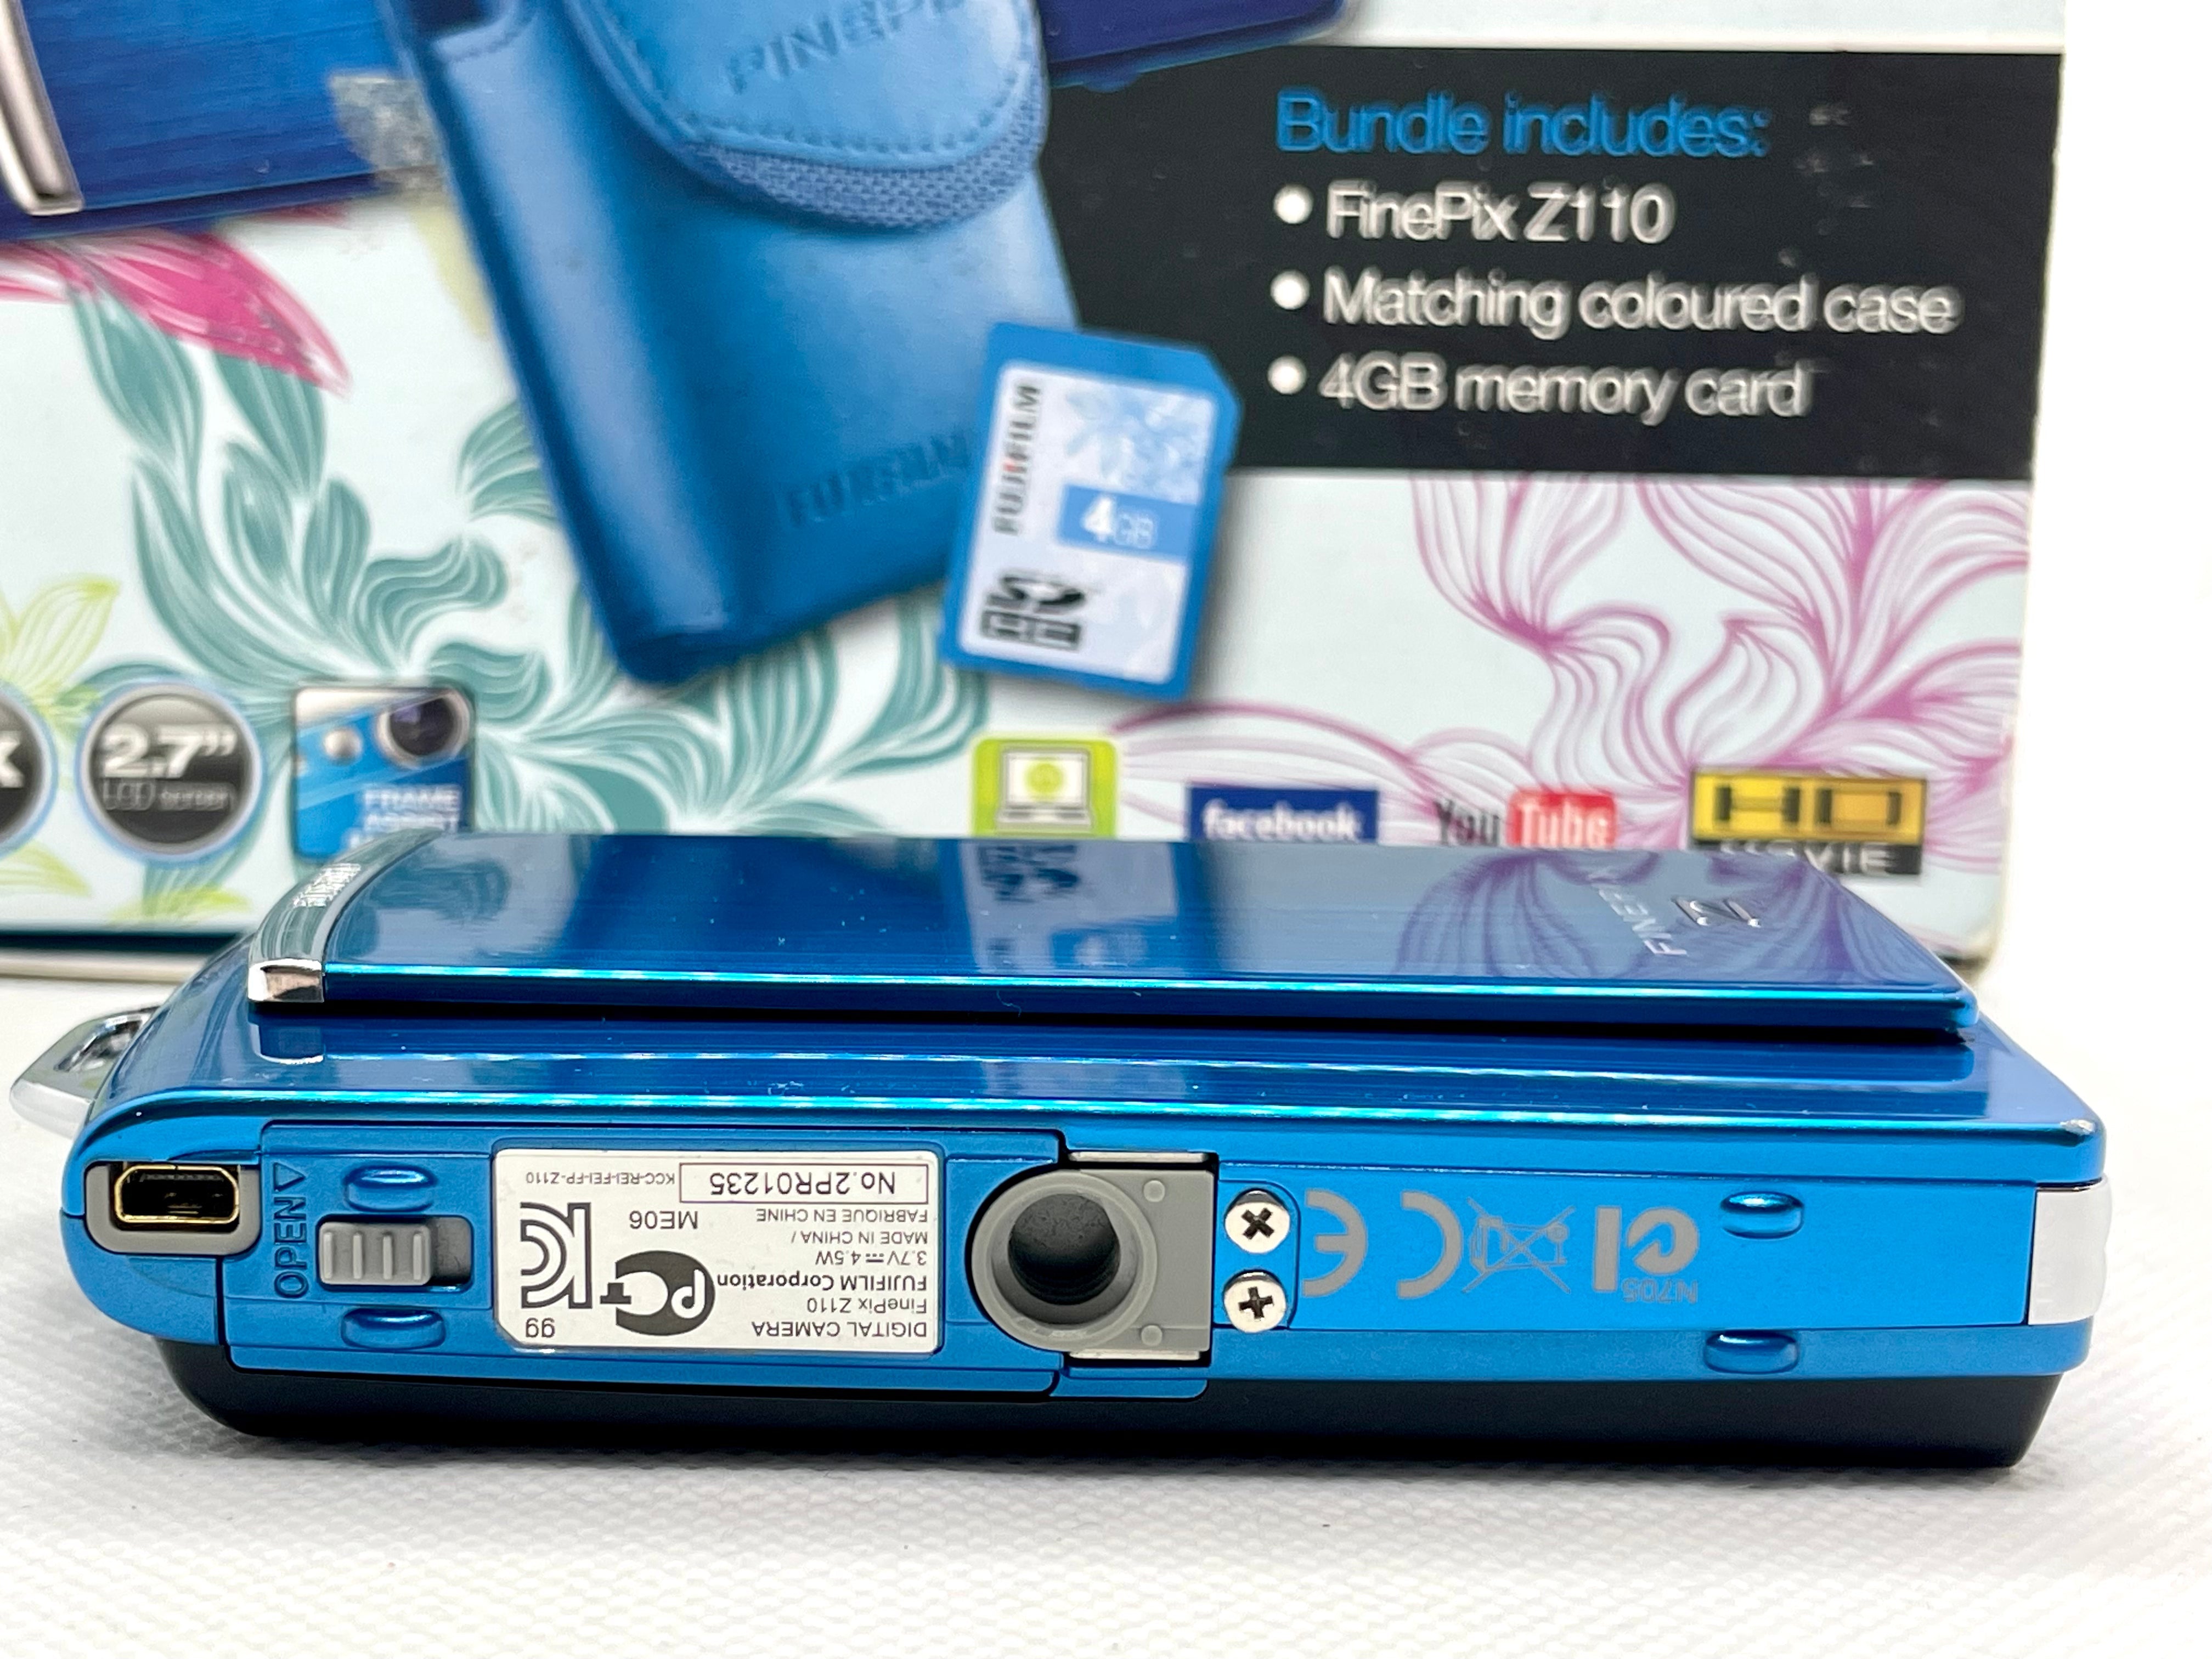 Fujifilm Finepix Z110 Digital Camera With Box Set